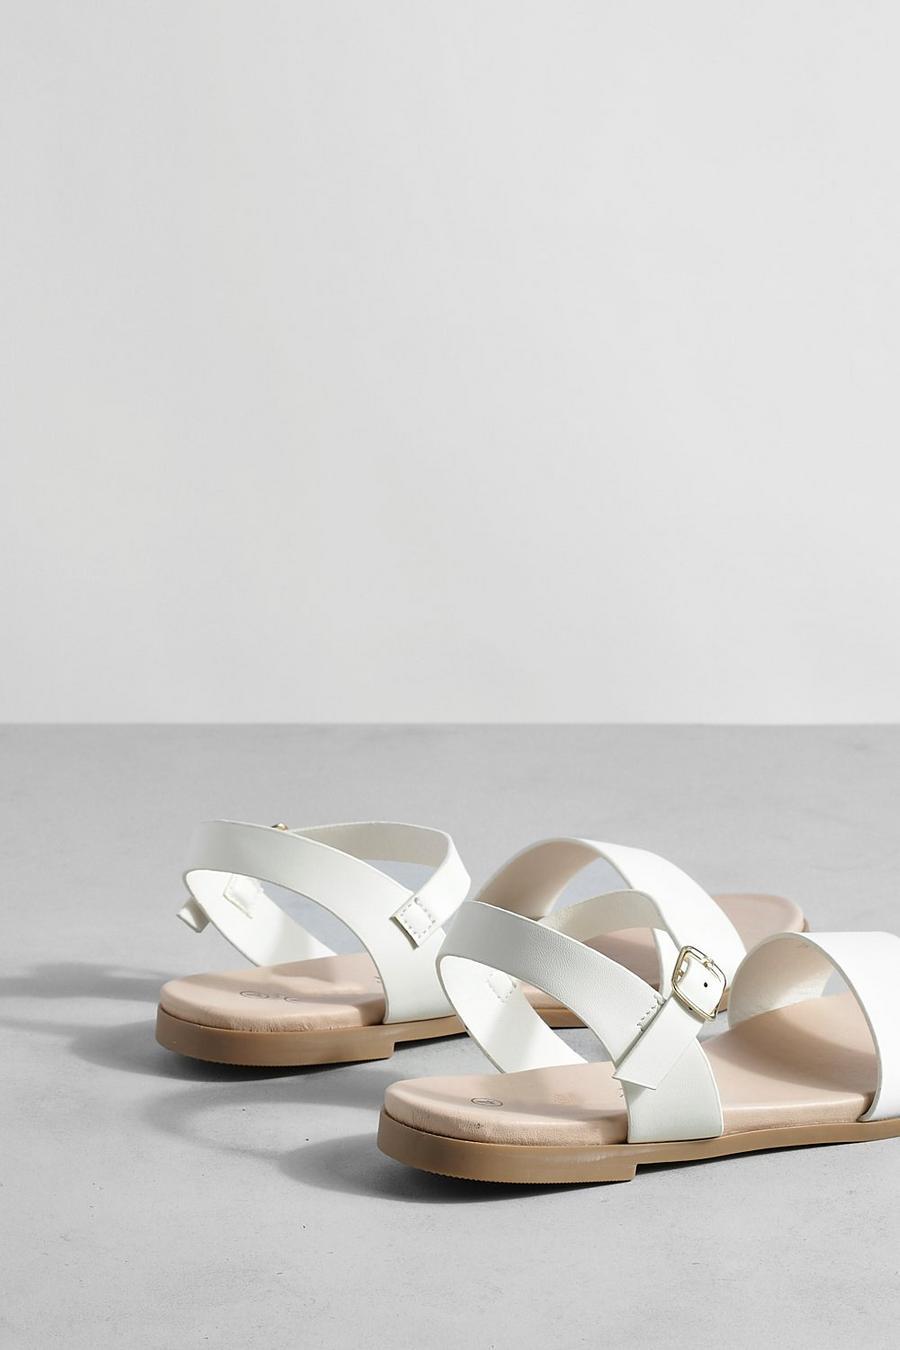 białe klasyczne płaskie sandały